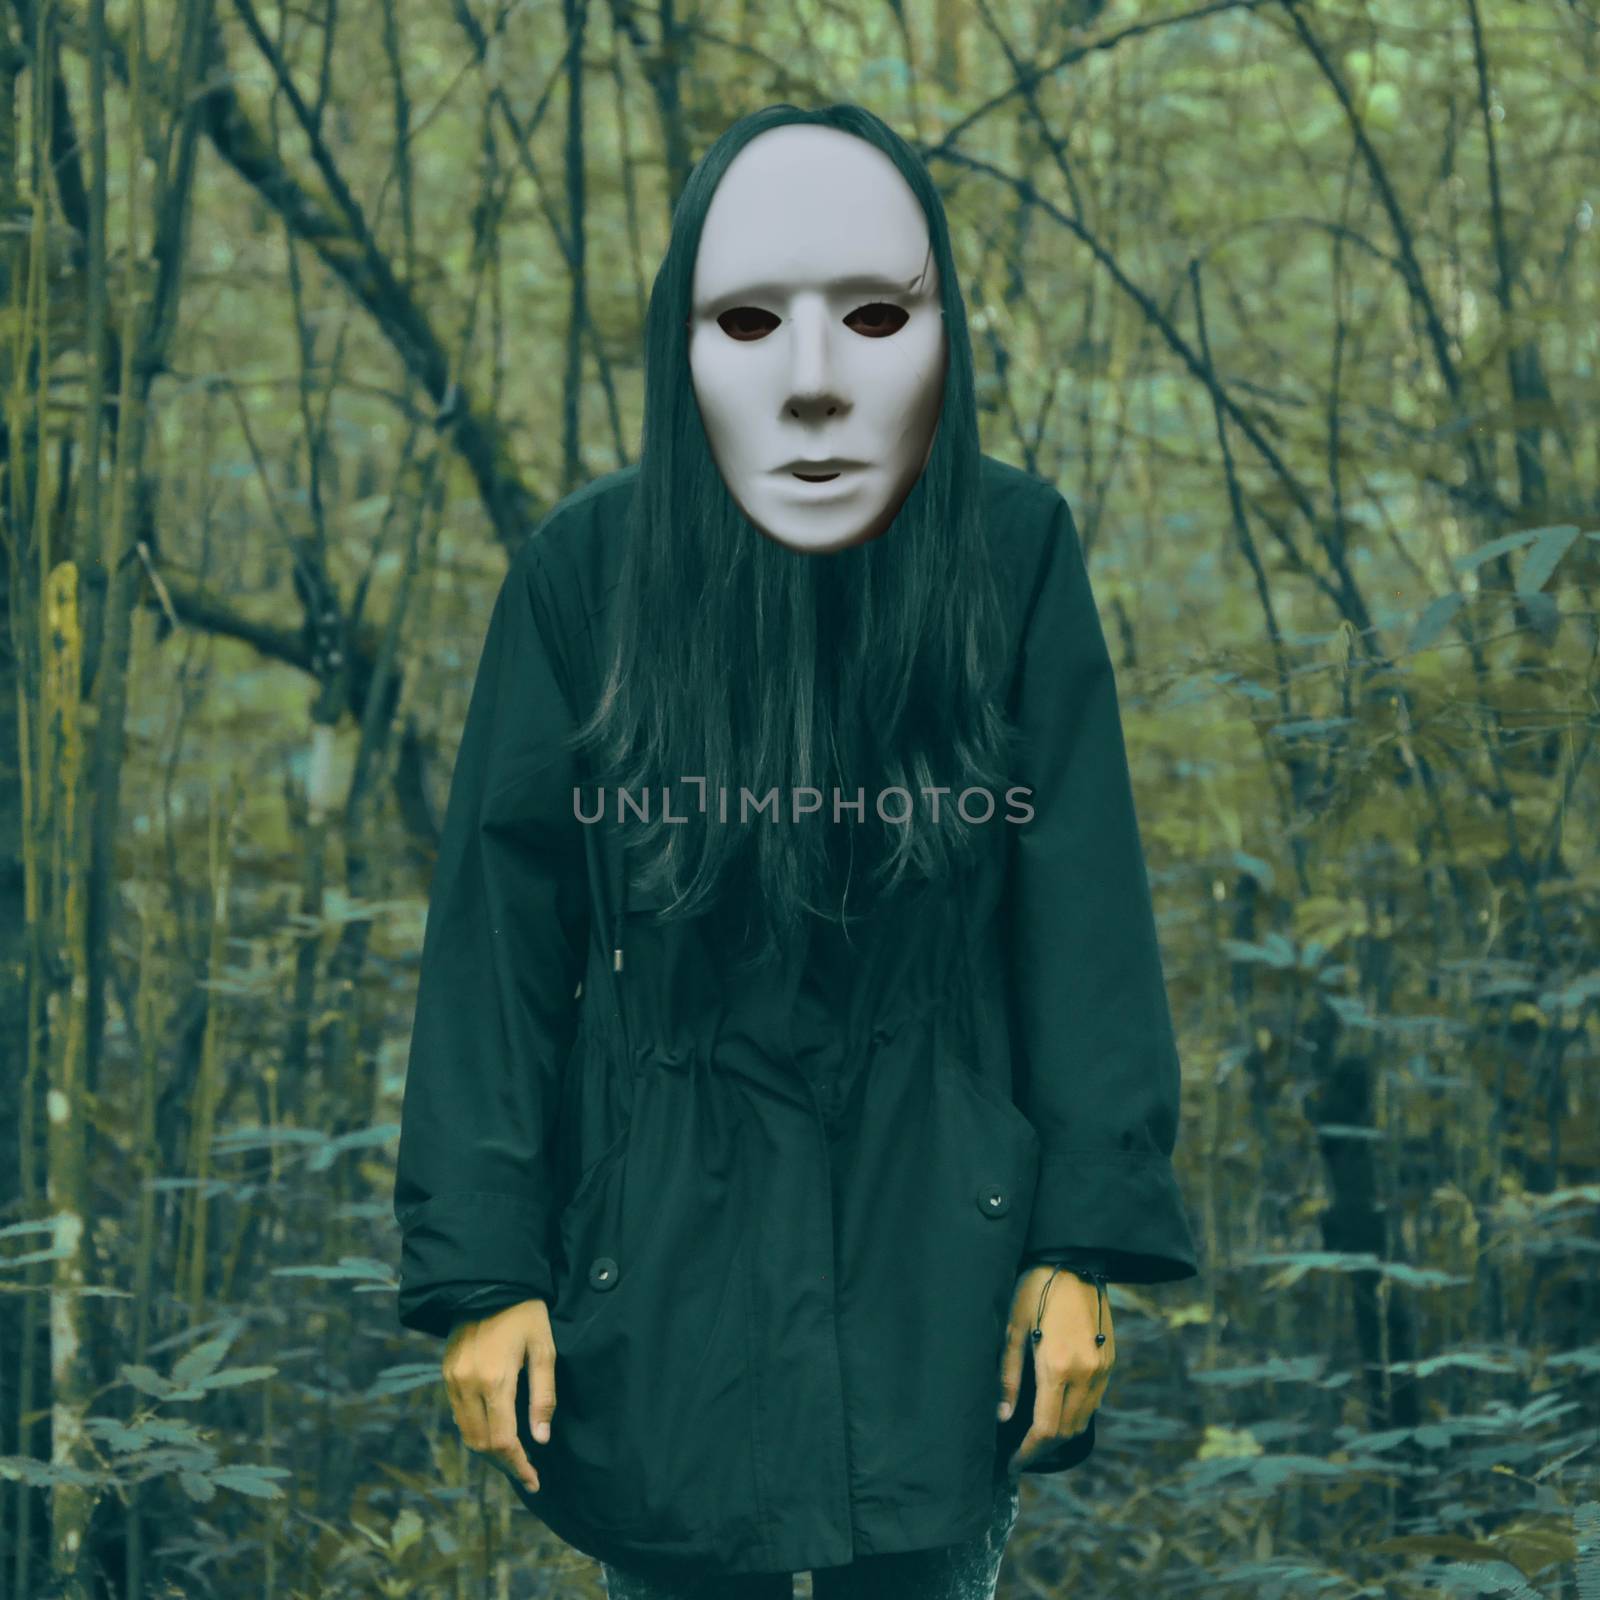 Halloween scary masked women in a creepy forest landscape by charlottebleijenberg